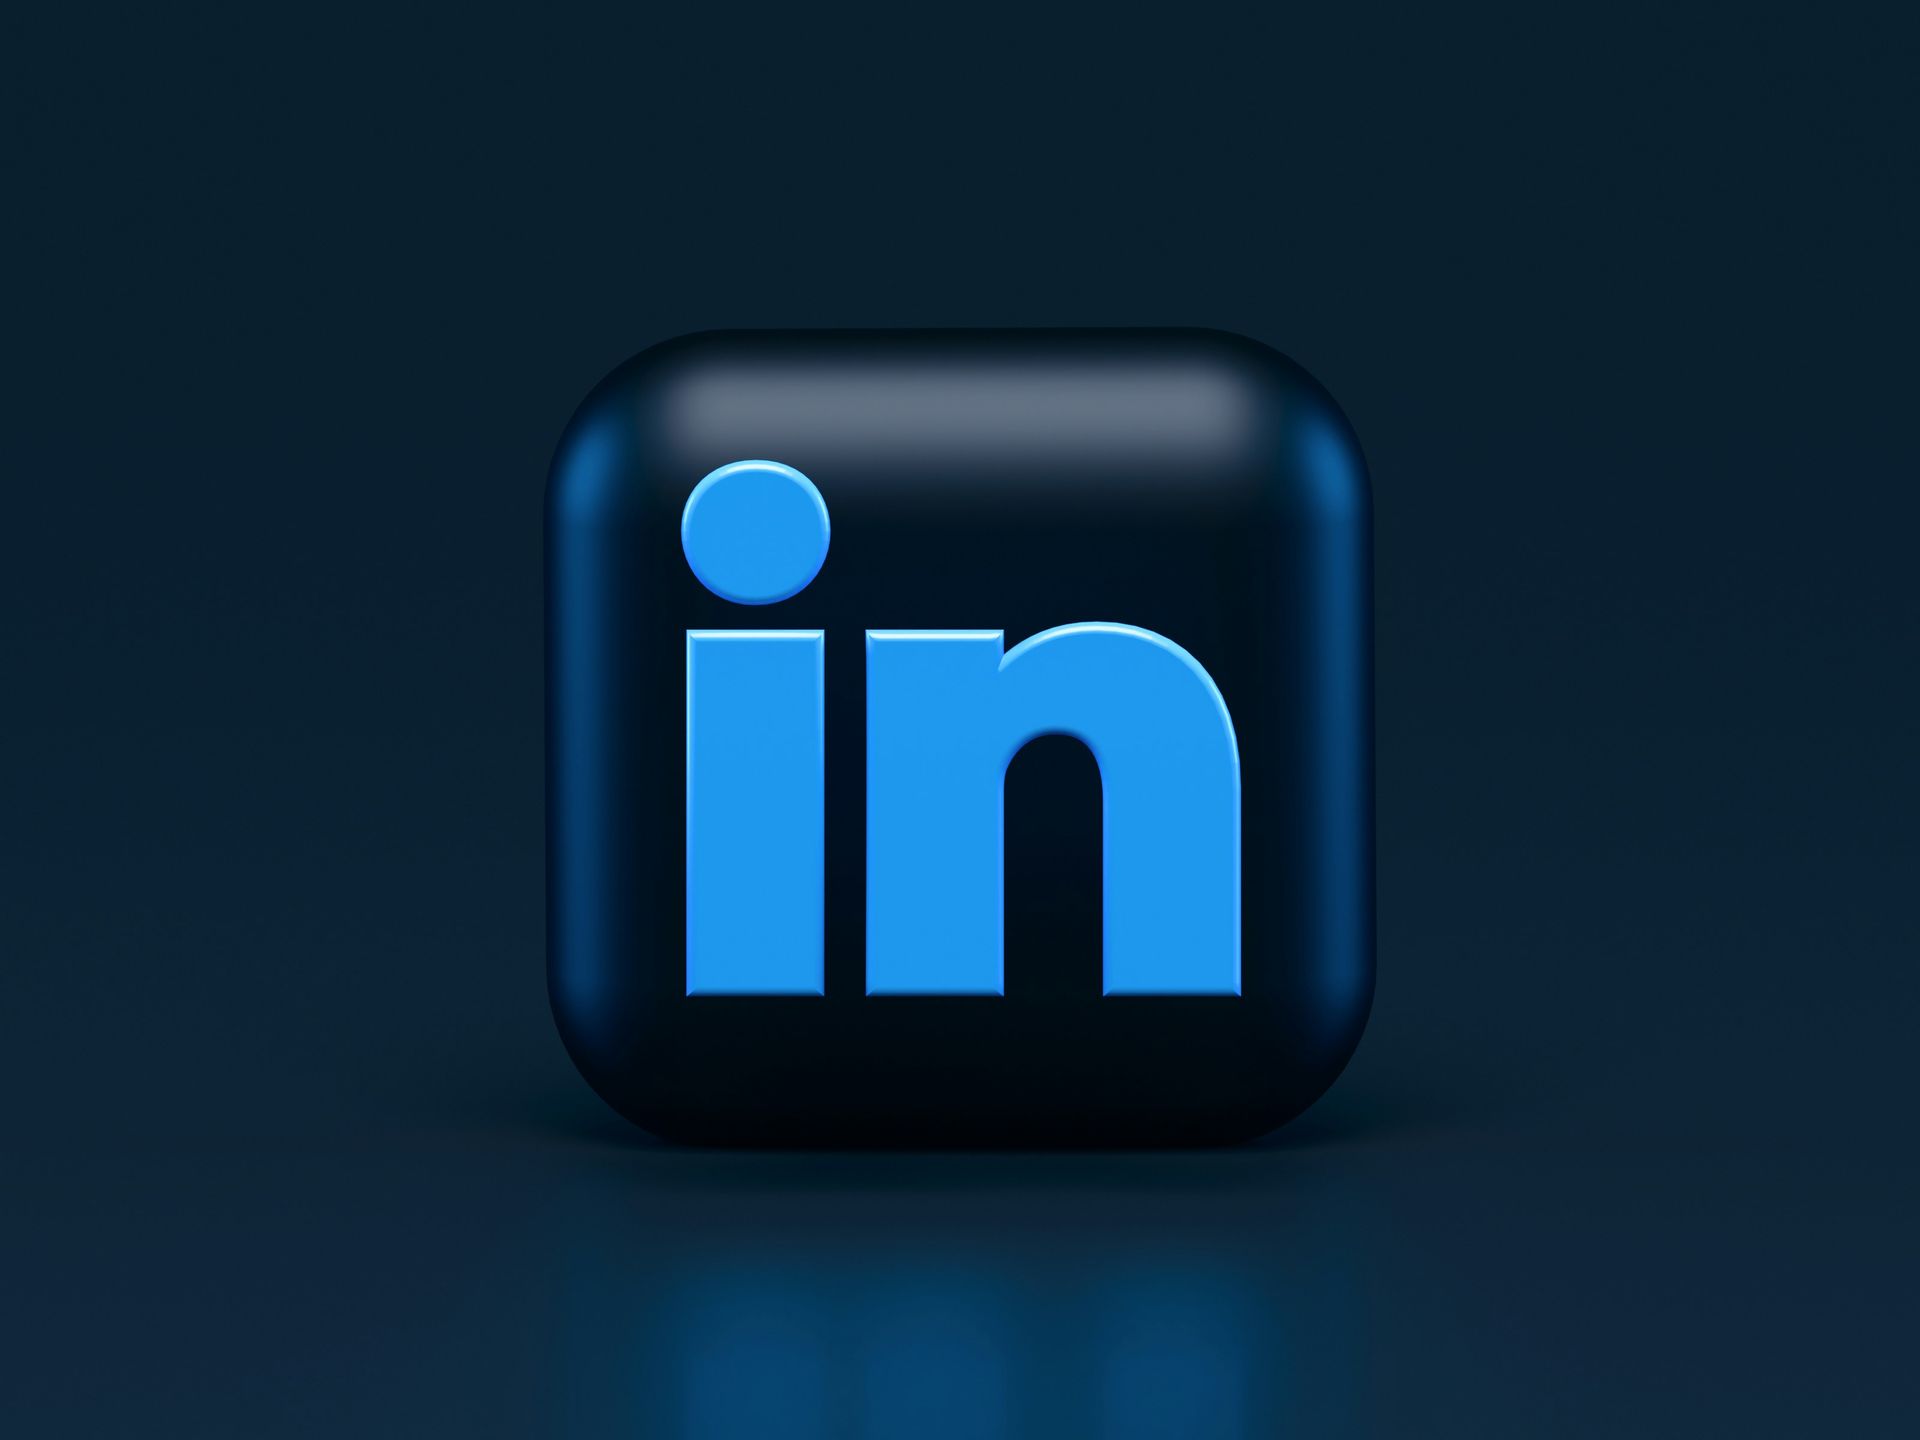 Icône de LinkedIn en 3D sur un fond bleu foncé, représentant l'application mobile de la plateforme professionnelle.